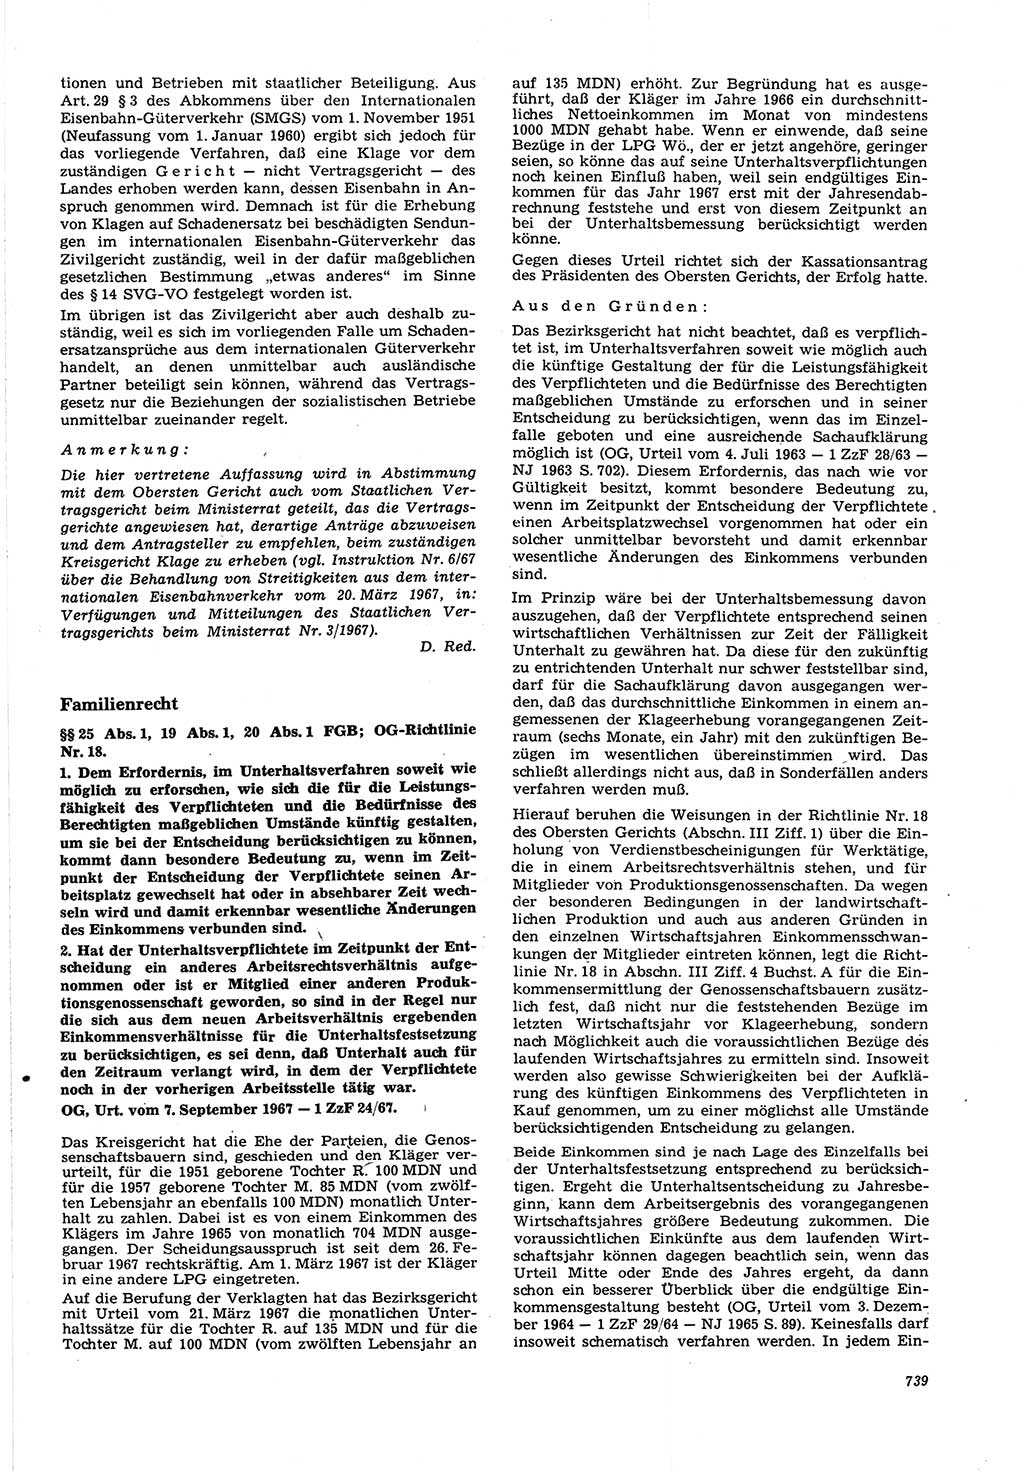 Neue Justiz (NJ), Zeitschrift für Recht und Rechtswissenschaft [Deutsche Demokratische Republik (DDR)], 21. Jahrgang 1967, Seite 739 (NJ DDR 1967, S. 739)